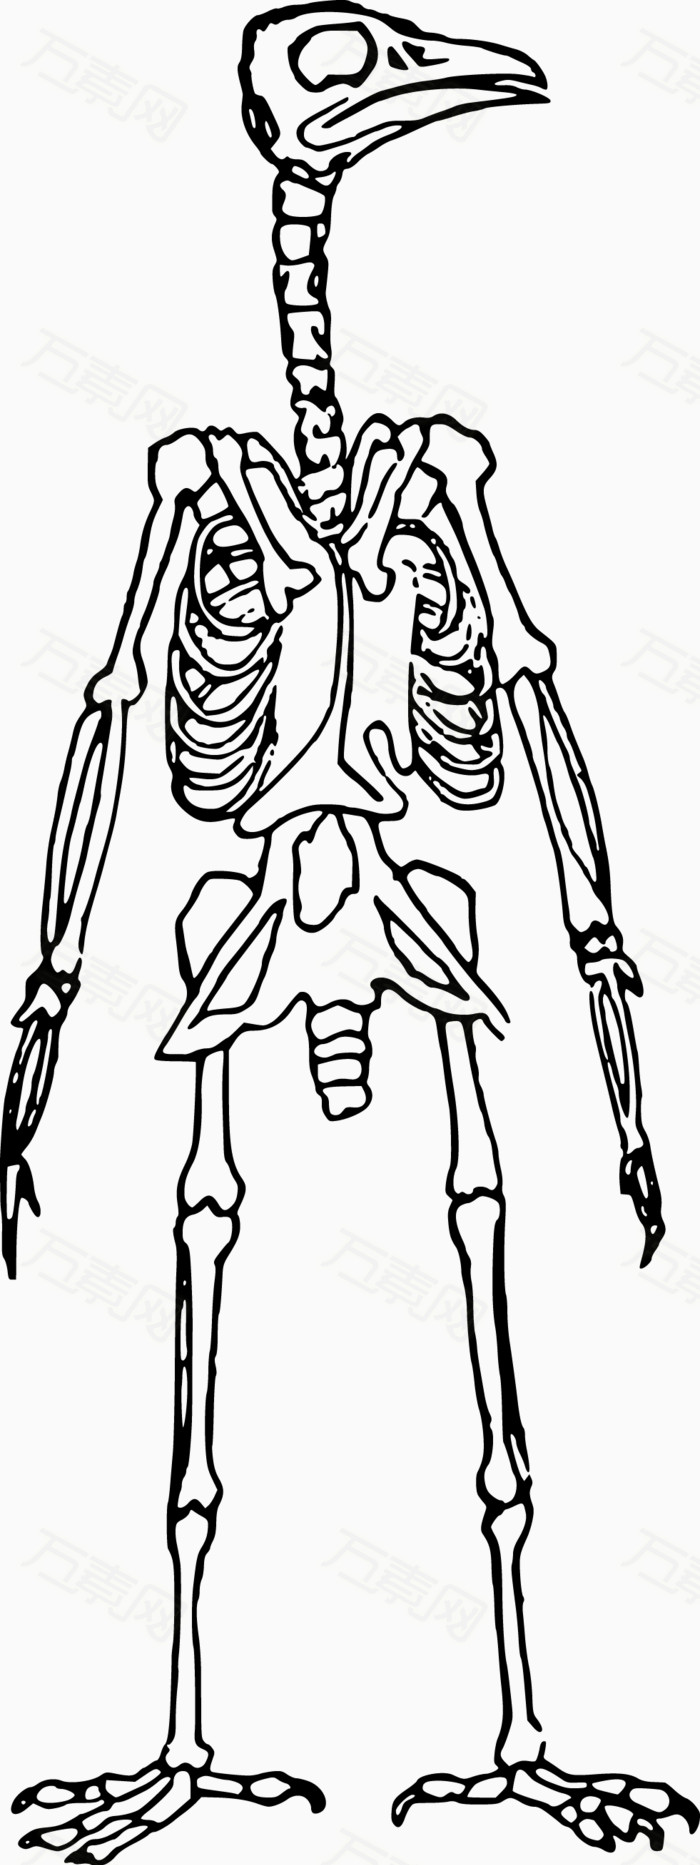 骨骼型版式设计素材图片